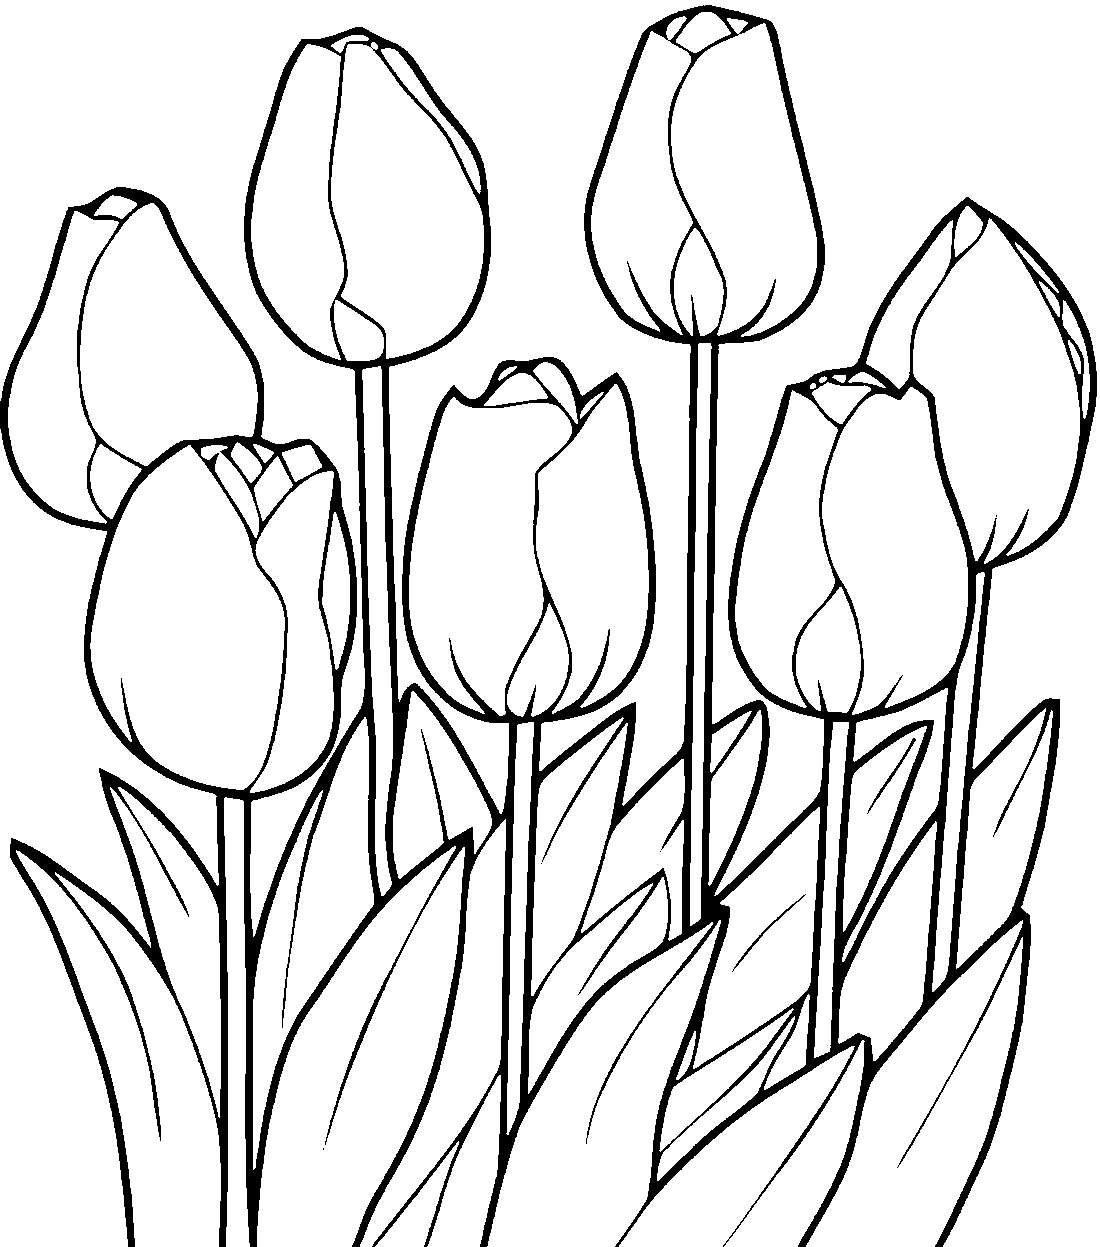 Para Colorear Tulipanes Tulipanes en crecimiento Imprimir.